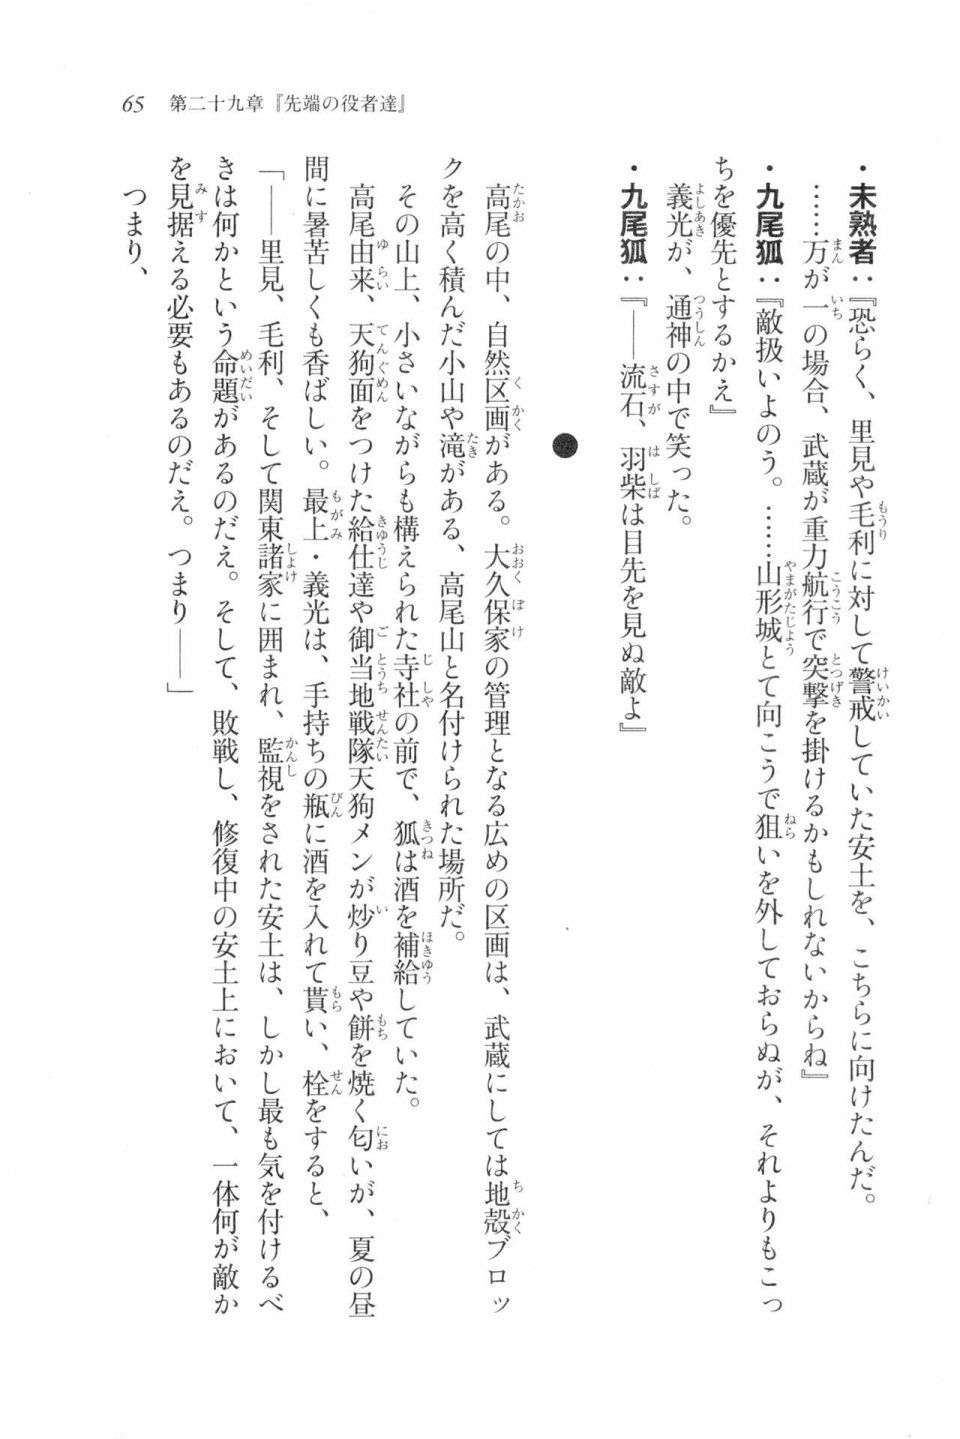 Kyoukai Senjou no Horizon LN Vol 20(8B) - Photo #65